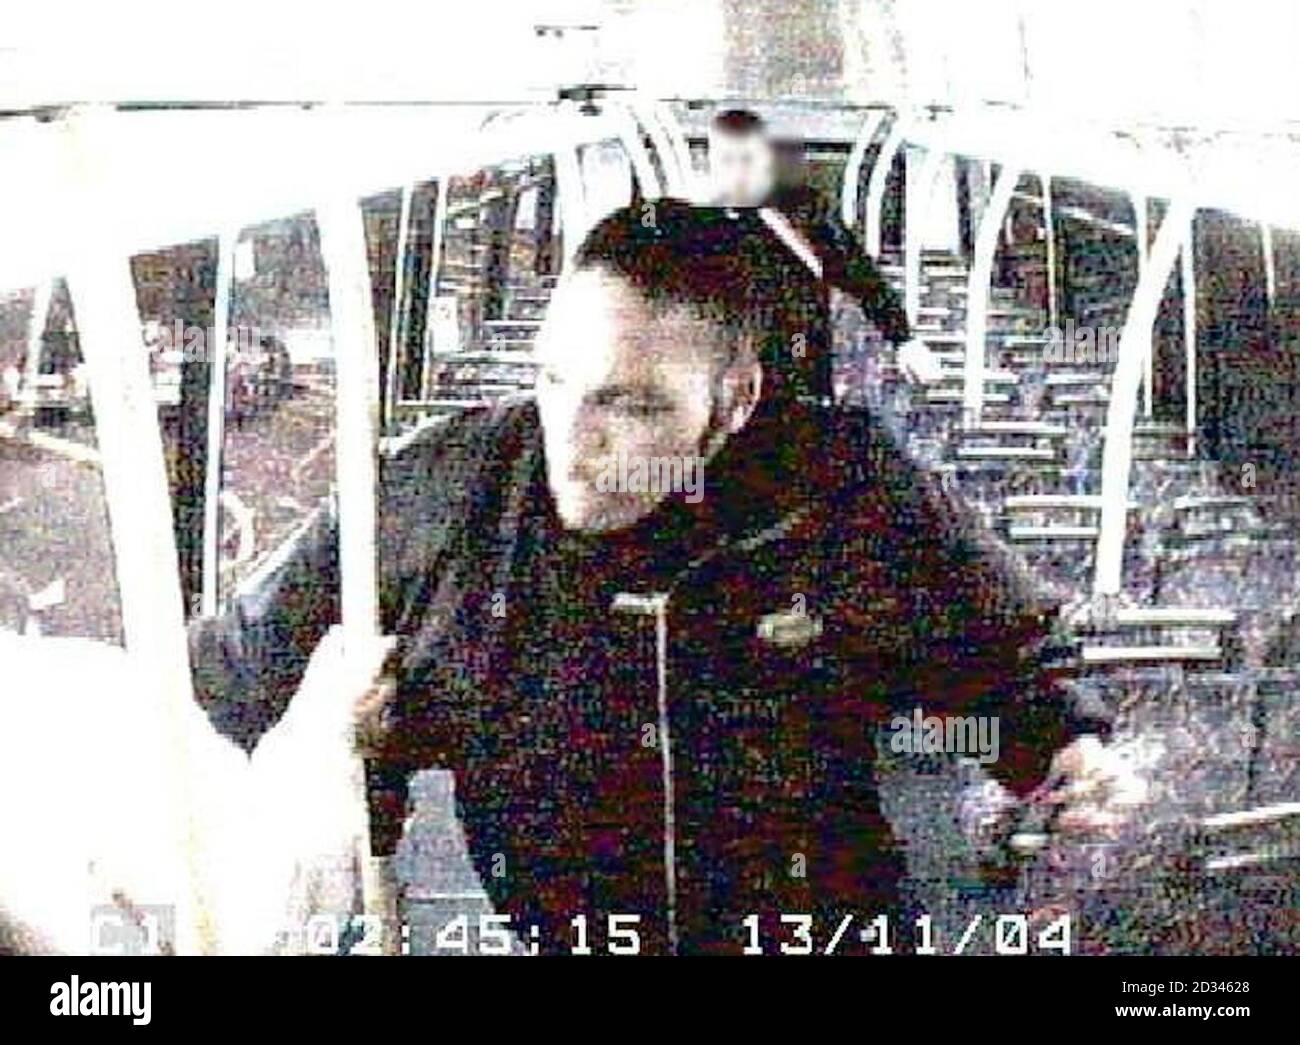 Die Polizei von Metroplitan veröffentlichte cctv-Bilder, in denen sie um Zeugen und Informationen bat.nach einem Vorfall, bei dem ein weißer Mann in seinen späten Zwanzigern Benzin in sein Gesicht gesprüht hatte und von einem schwarzen Mann in seinen späten Teenagern in einen Bus angezündet wurde.der Vorfall ereignete sich gegen 02:30 Uhr am Samstag, den 13/11/04 Mit dem N16 Bus von Victoria nach Edgware, wie es durch High Street, Edgware. CCTV aus dem Bus zeigt, dass es eine Störung zwischen drei oder vier weißen Männern oben im Bus gab. Ein schwarzer Mann im Teenageralter, der auf dem Rücksitz des Oberdecks des Busses schlief, wurde geweckt Stockfoto